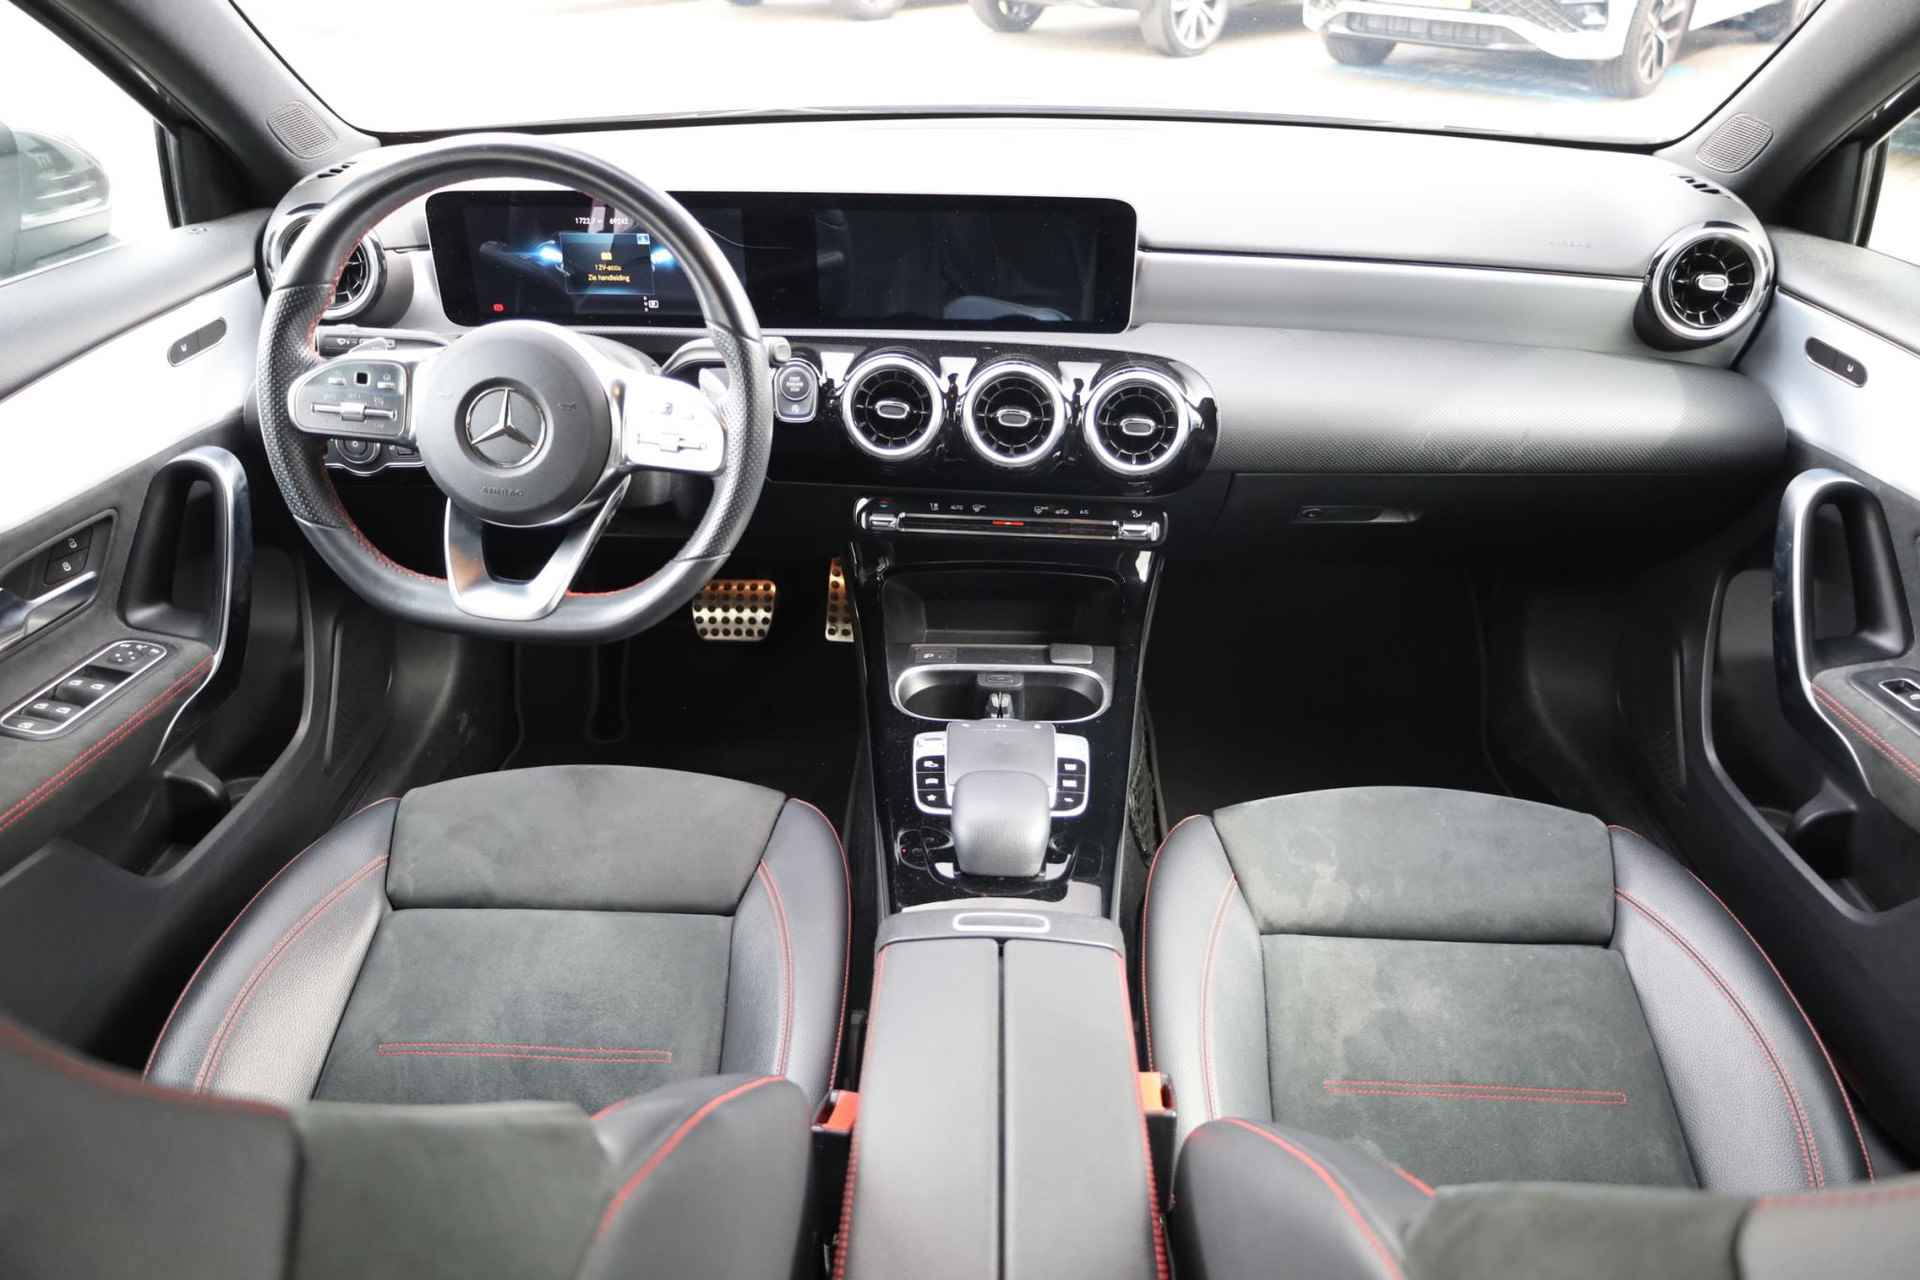 Mercedes-Benz A-klasse 200 Business Solution AMG 163PK / 120kW automaat, Leder / alcantara, winterset LMV, digitaal dashboard, navigatie, LED verlichting voor en achter, 18" LMV, stoelverwarming, parkeersensoren voor en achter, AMG bumpers - 4/44